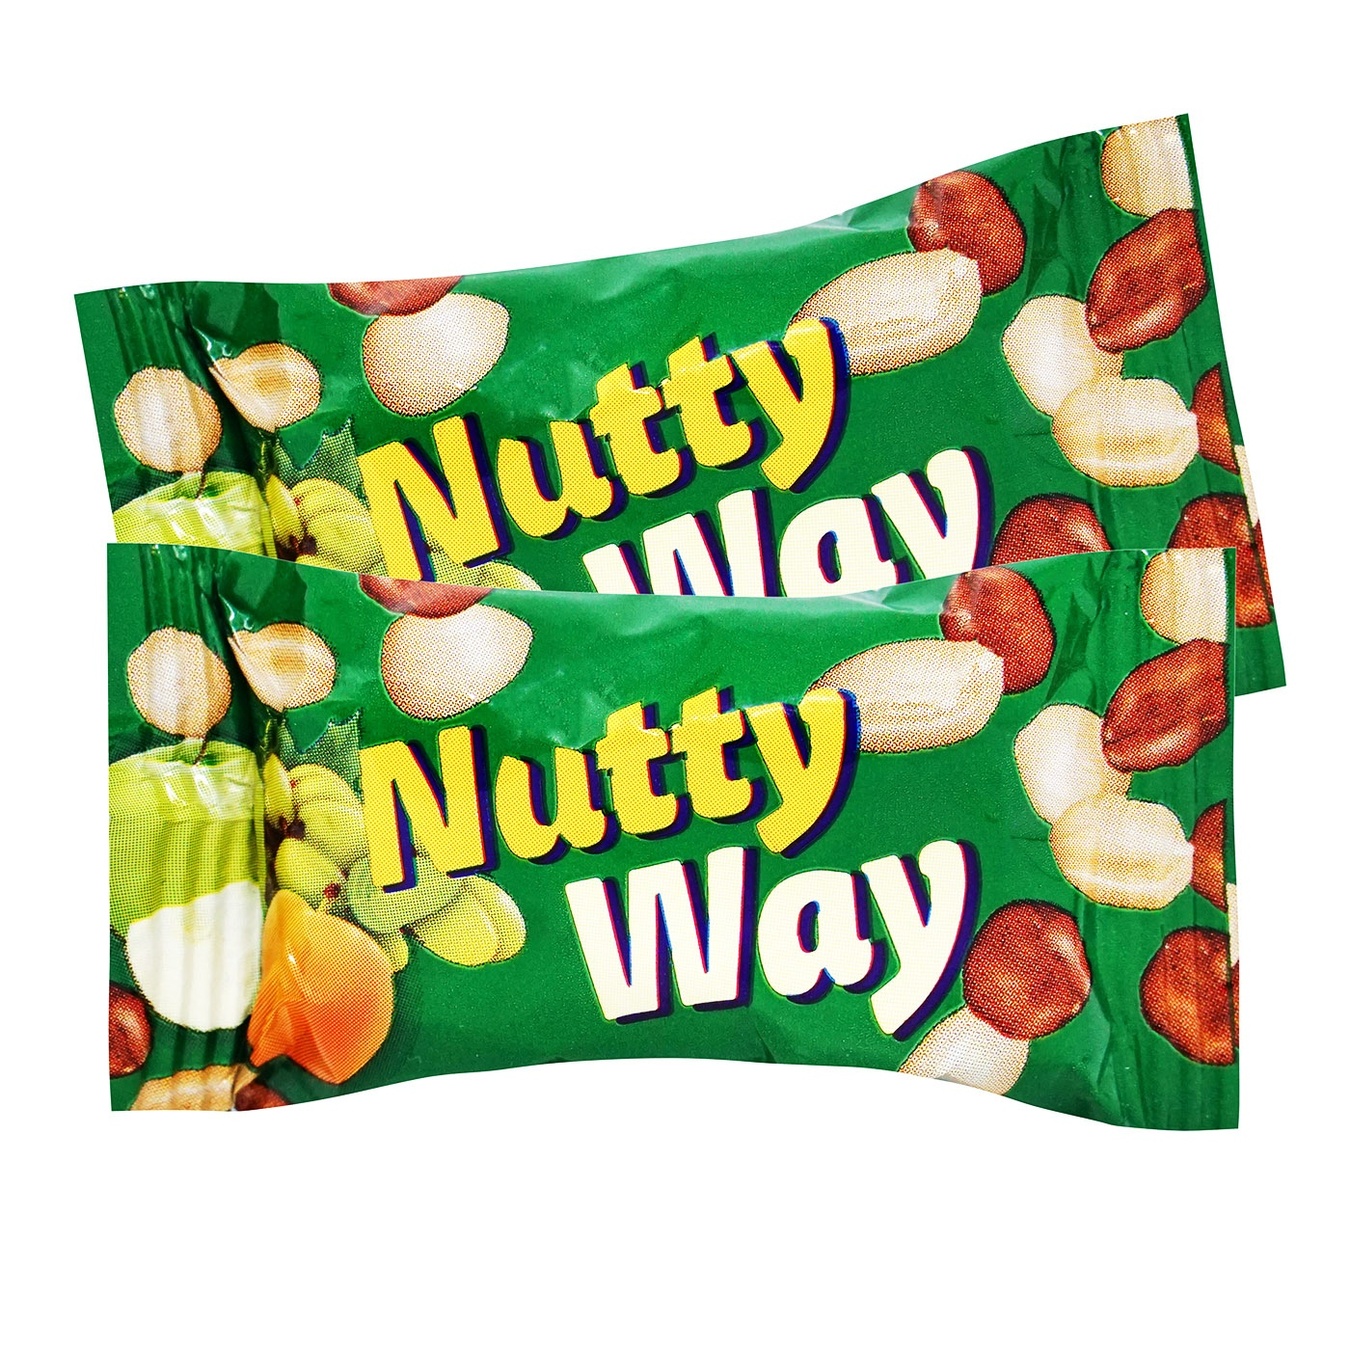 Конфеты VALE Nutty Way ореховые мюсли с фруктами частично в глазури весовые